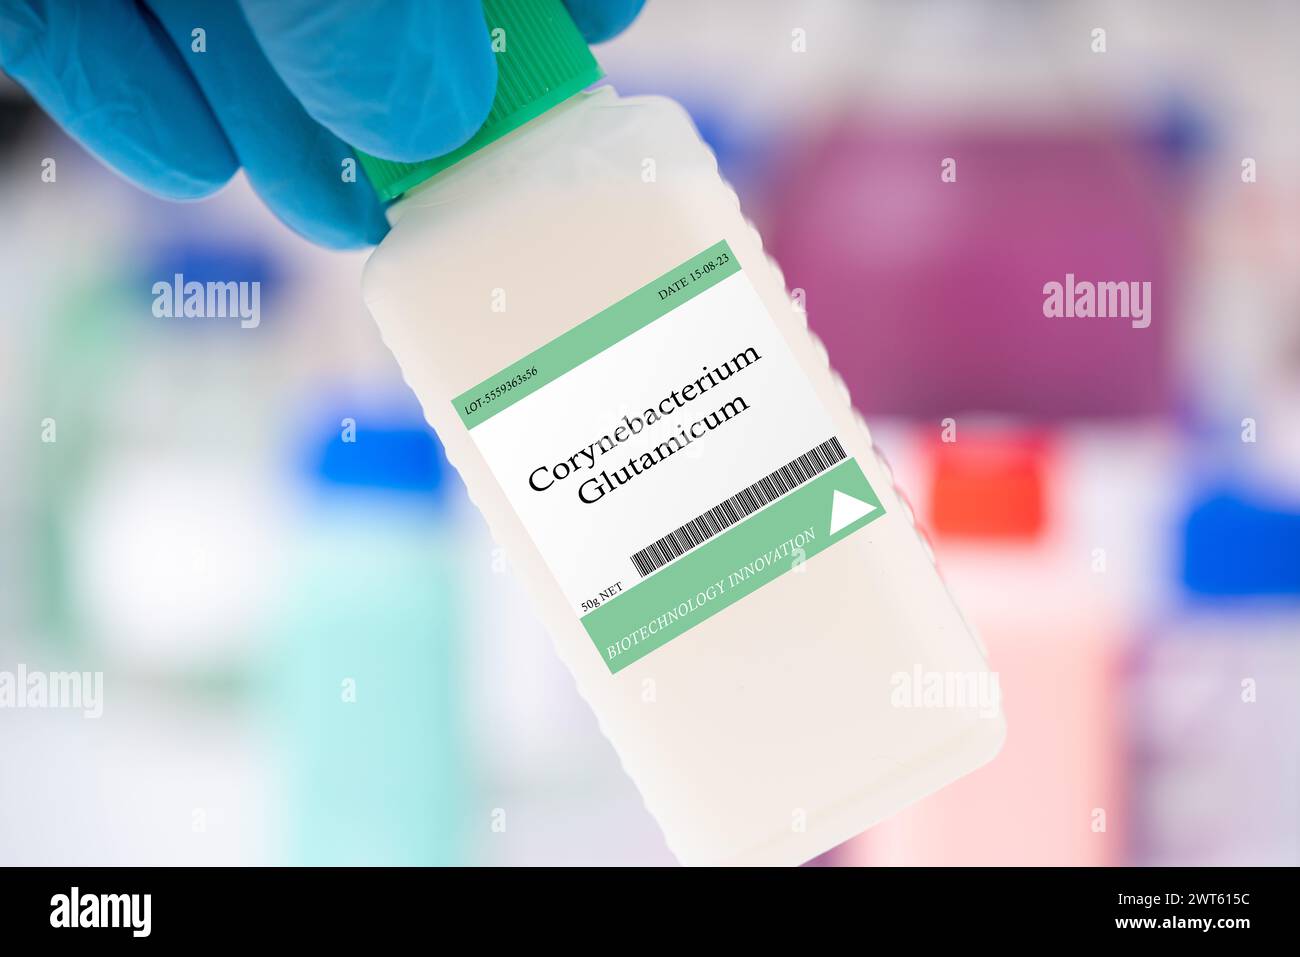 Corynebacterium glutamicum-Bakterien. Zur Herstellung von Aminosäuren und Geschmacksverstärkern. Stockfoto